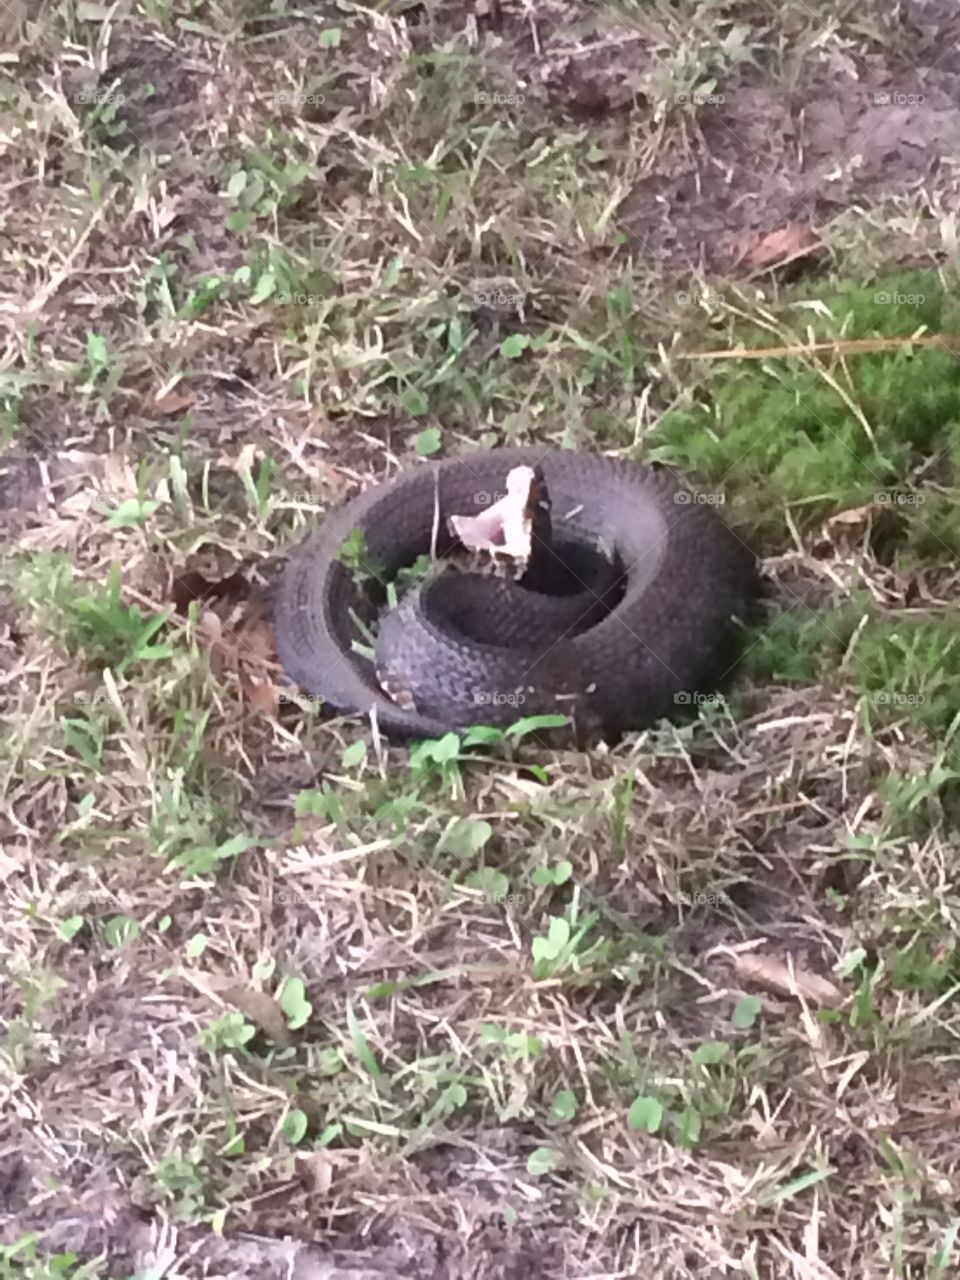 Copperhead snake ready to strike